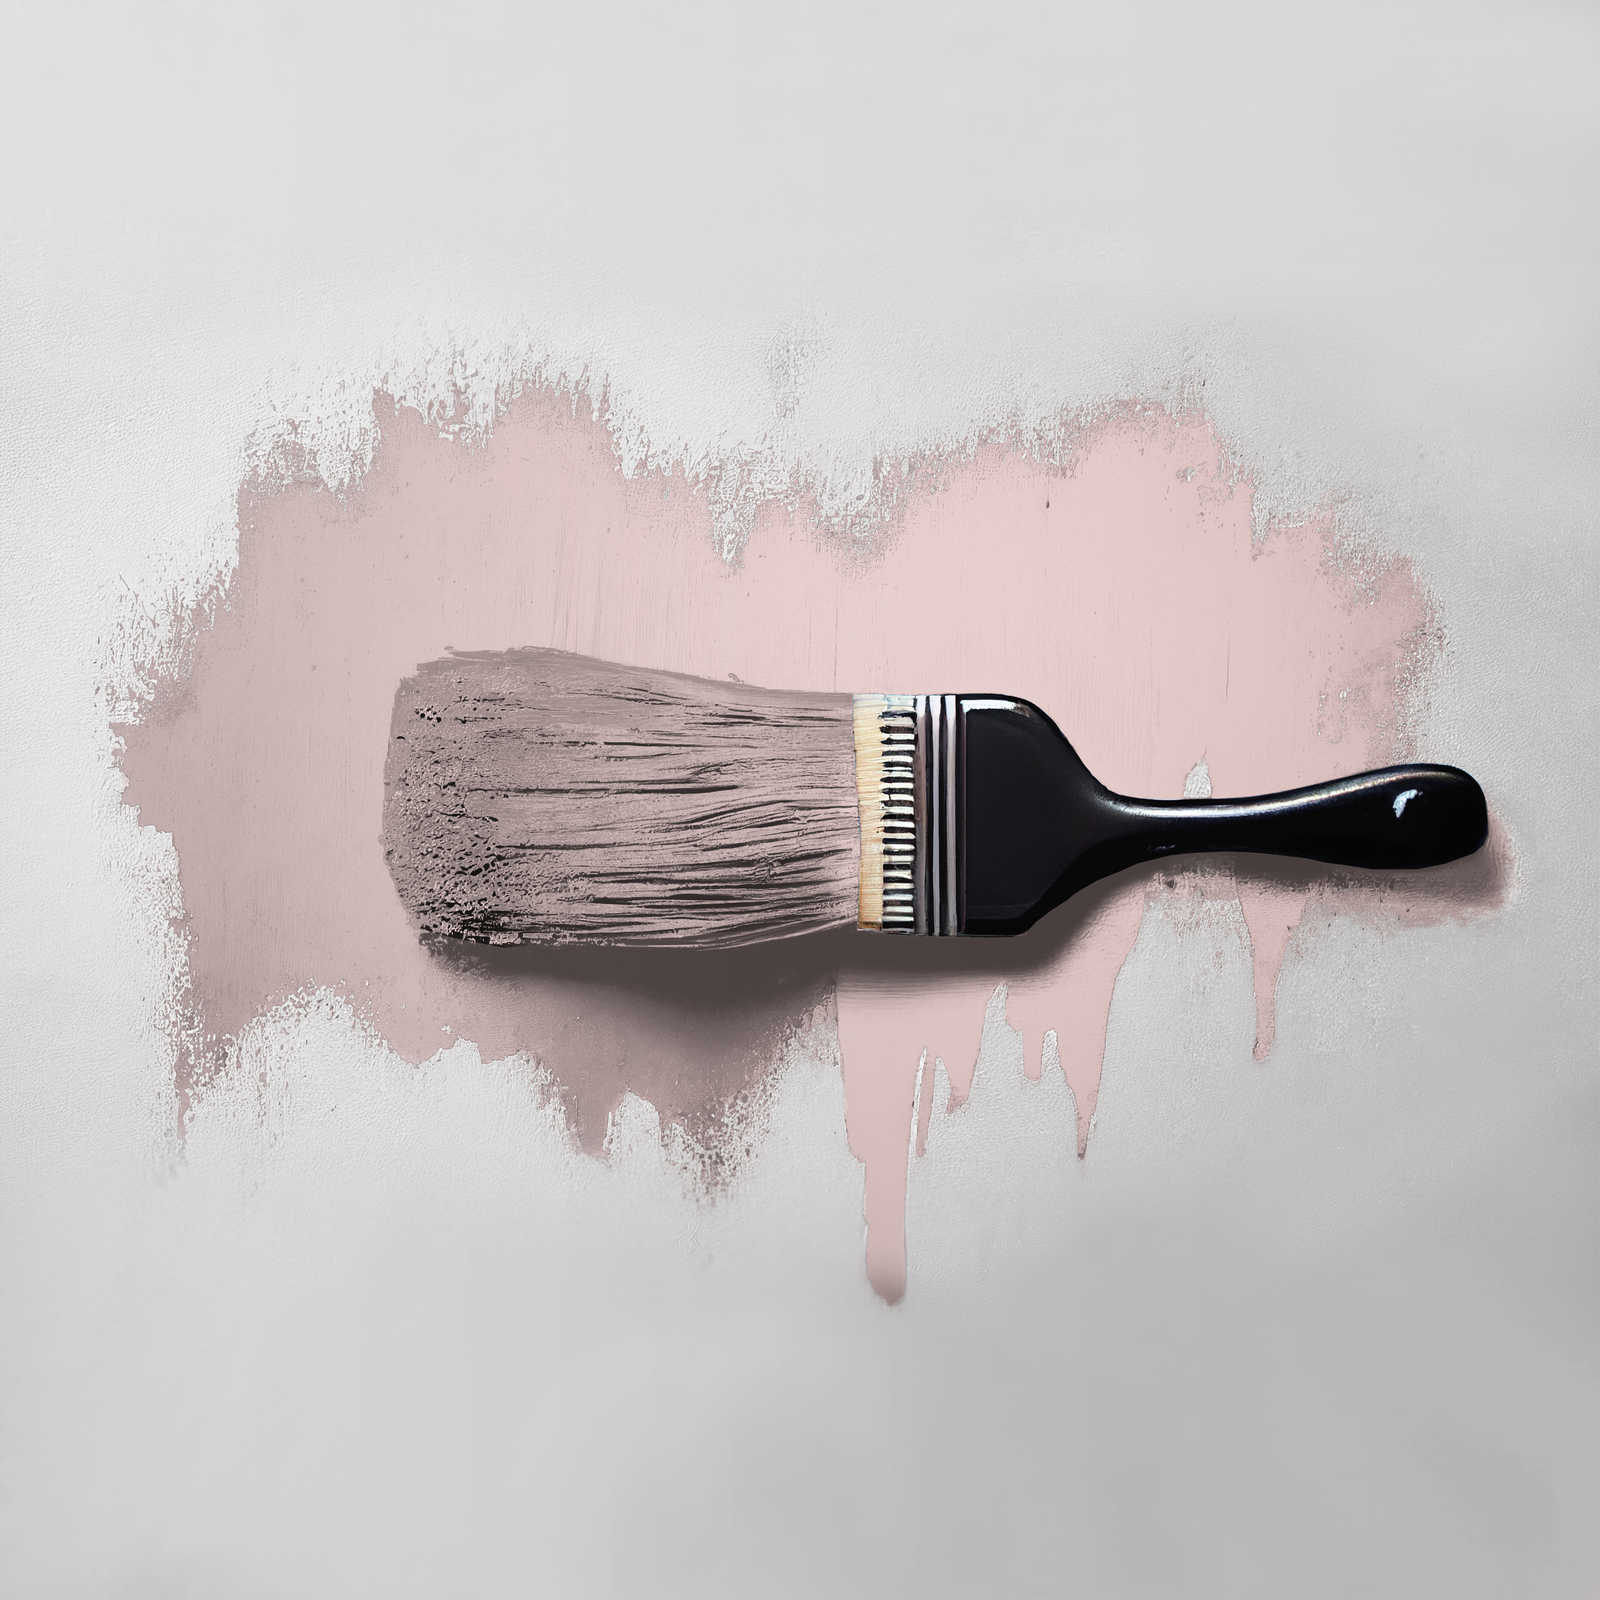             Pintura mural TCK7008 »Cute Cupcake« en rosa delicado – 5,0 litro
        